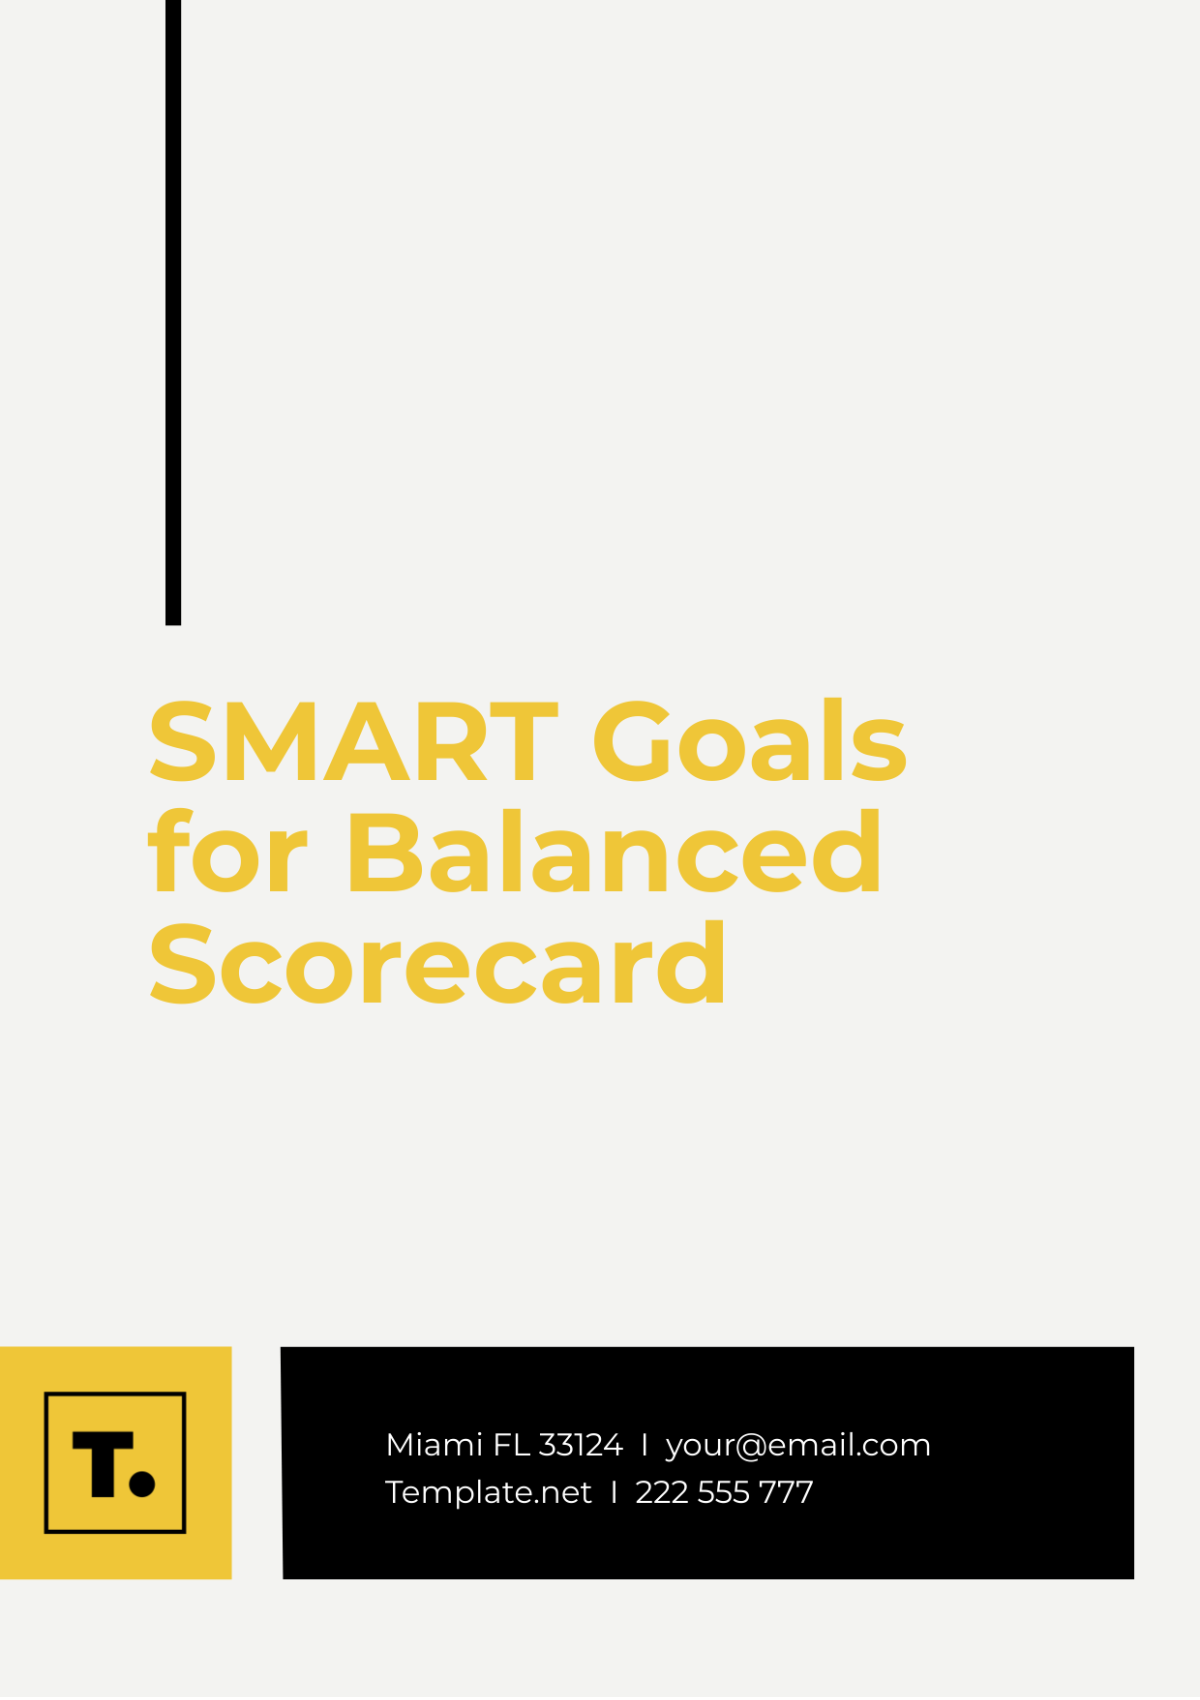 SMART Goals for Balanced Scorecard Template